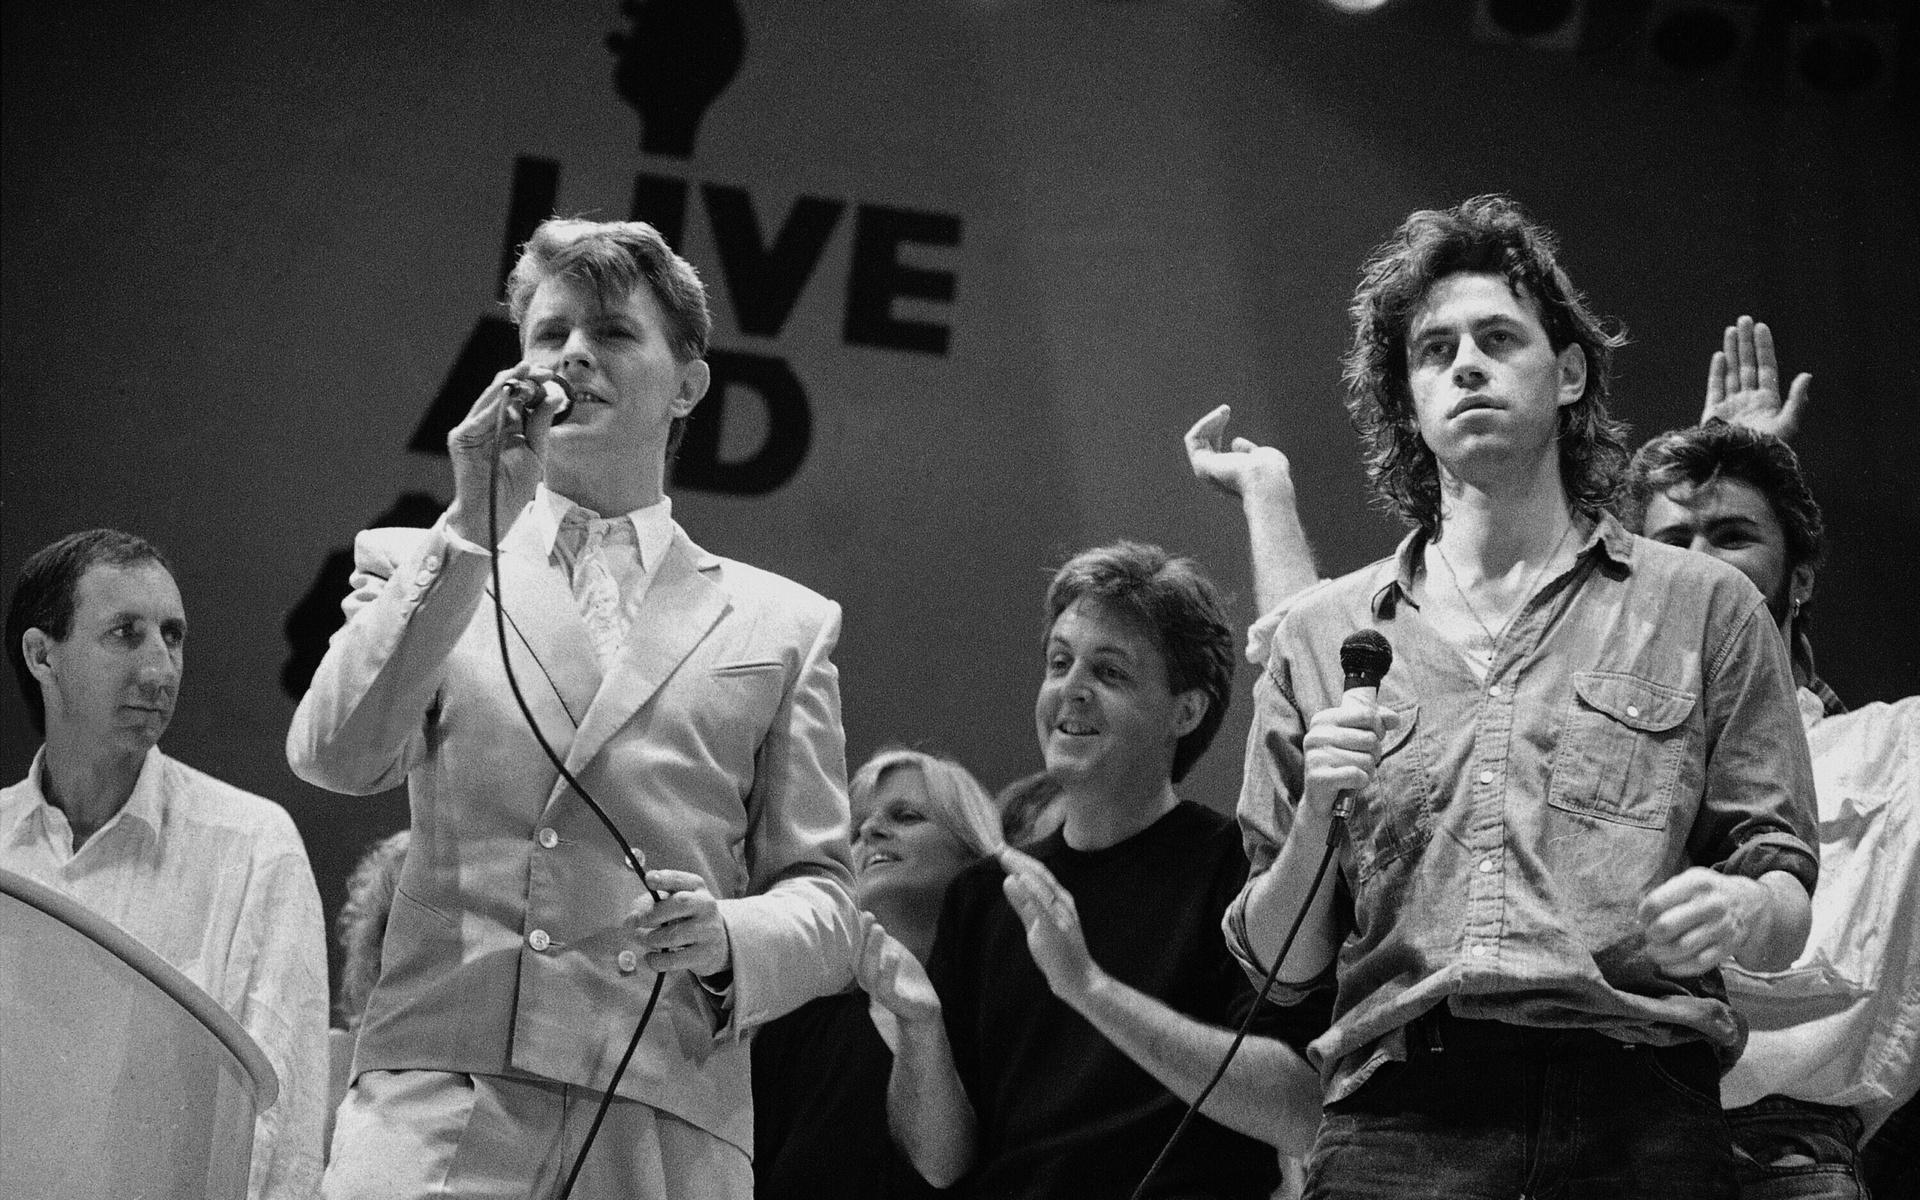 David Bowie delade ut en känga till MTV när han i en intervju i programmet uppmärksammade den dåliga mångfald bland artister. Här ser vi honom tillsammans med Paul McCartney och Live Aid-grundaren Bob Geldoff.